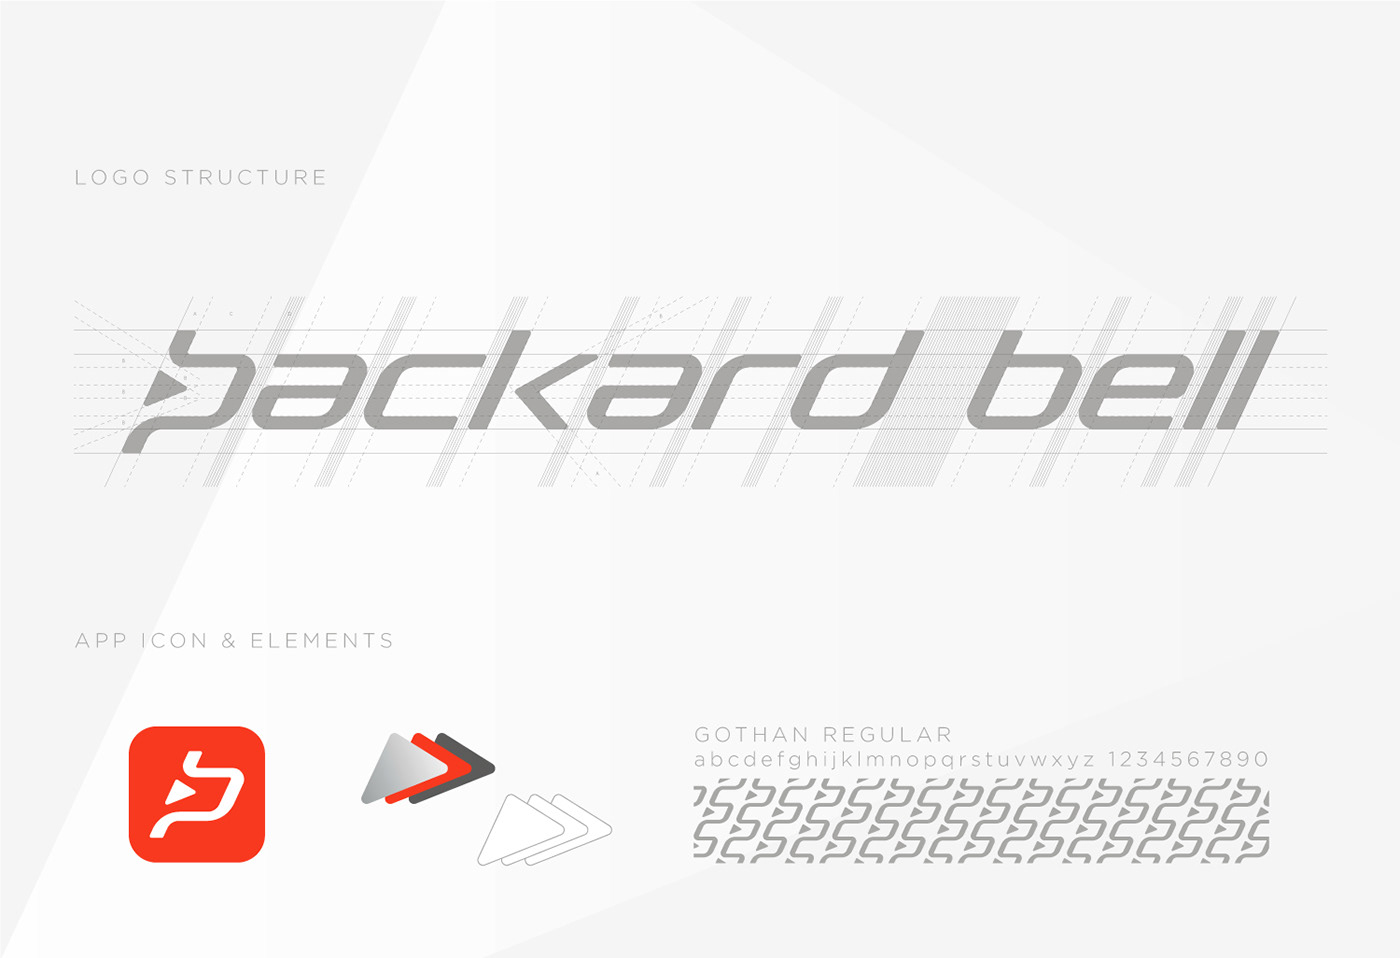 packard bell logo apps rebranding branding 